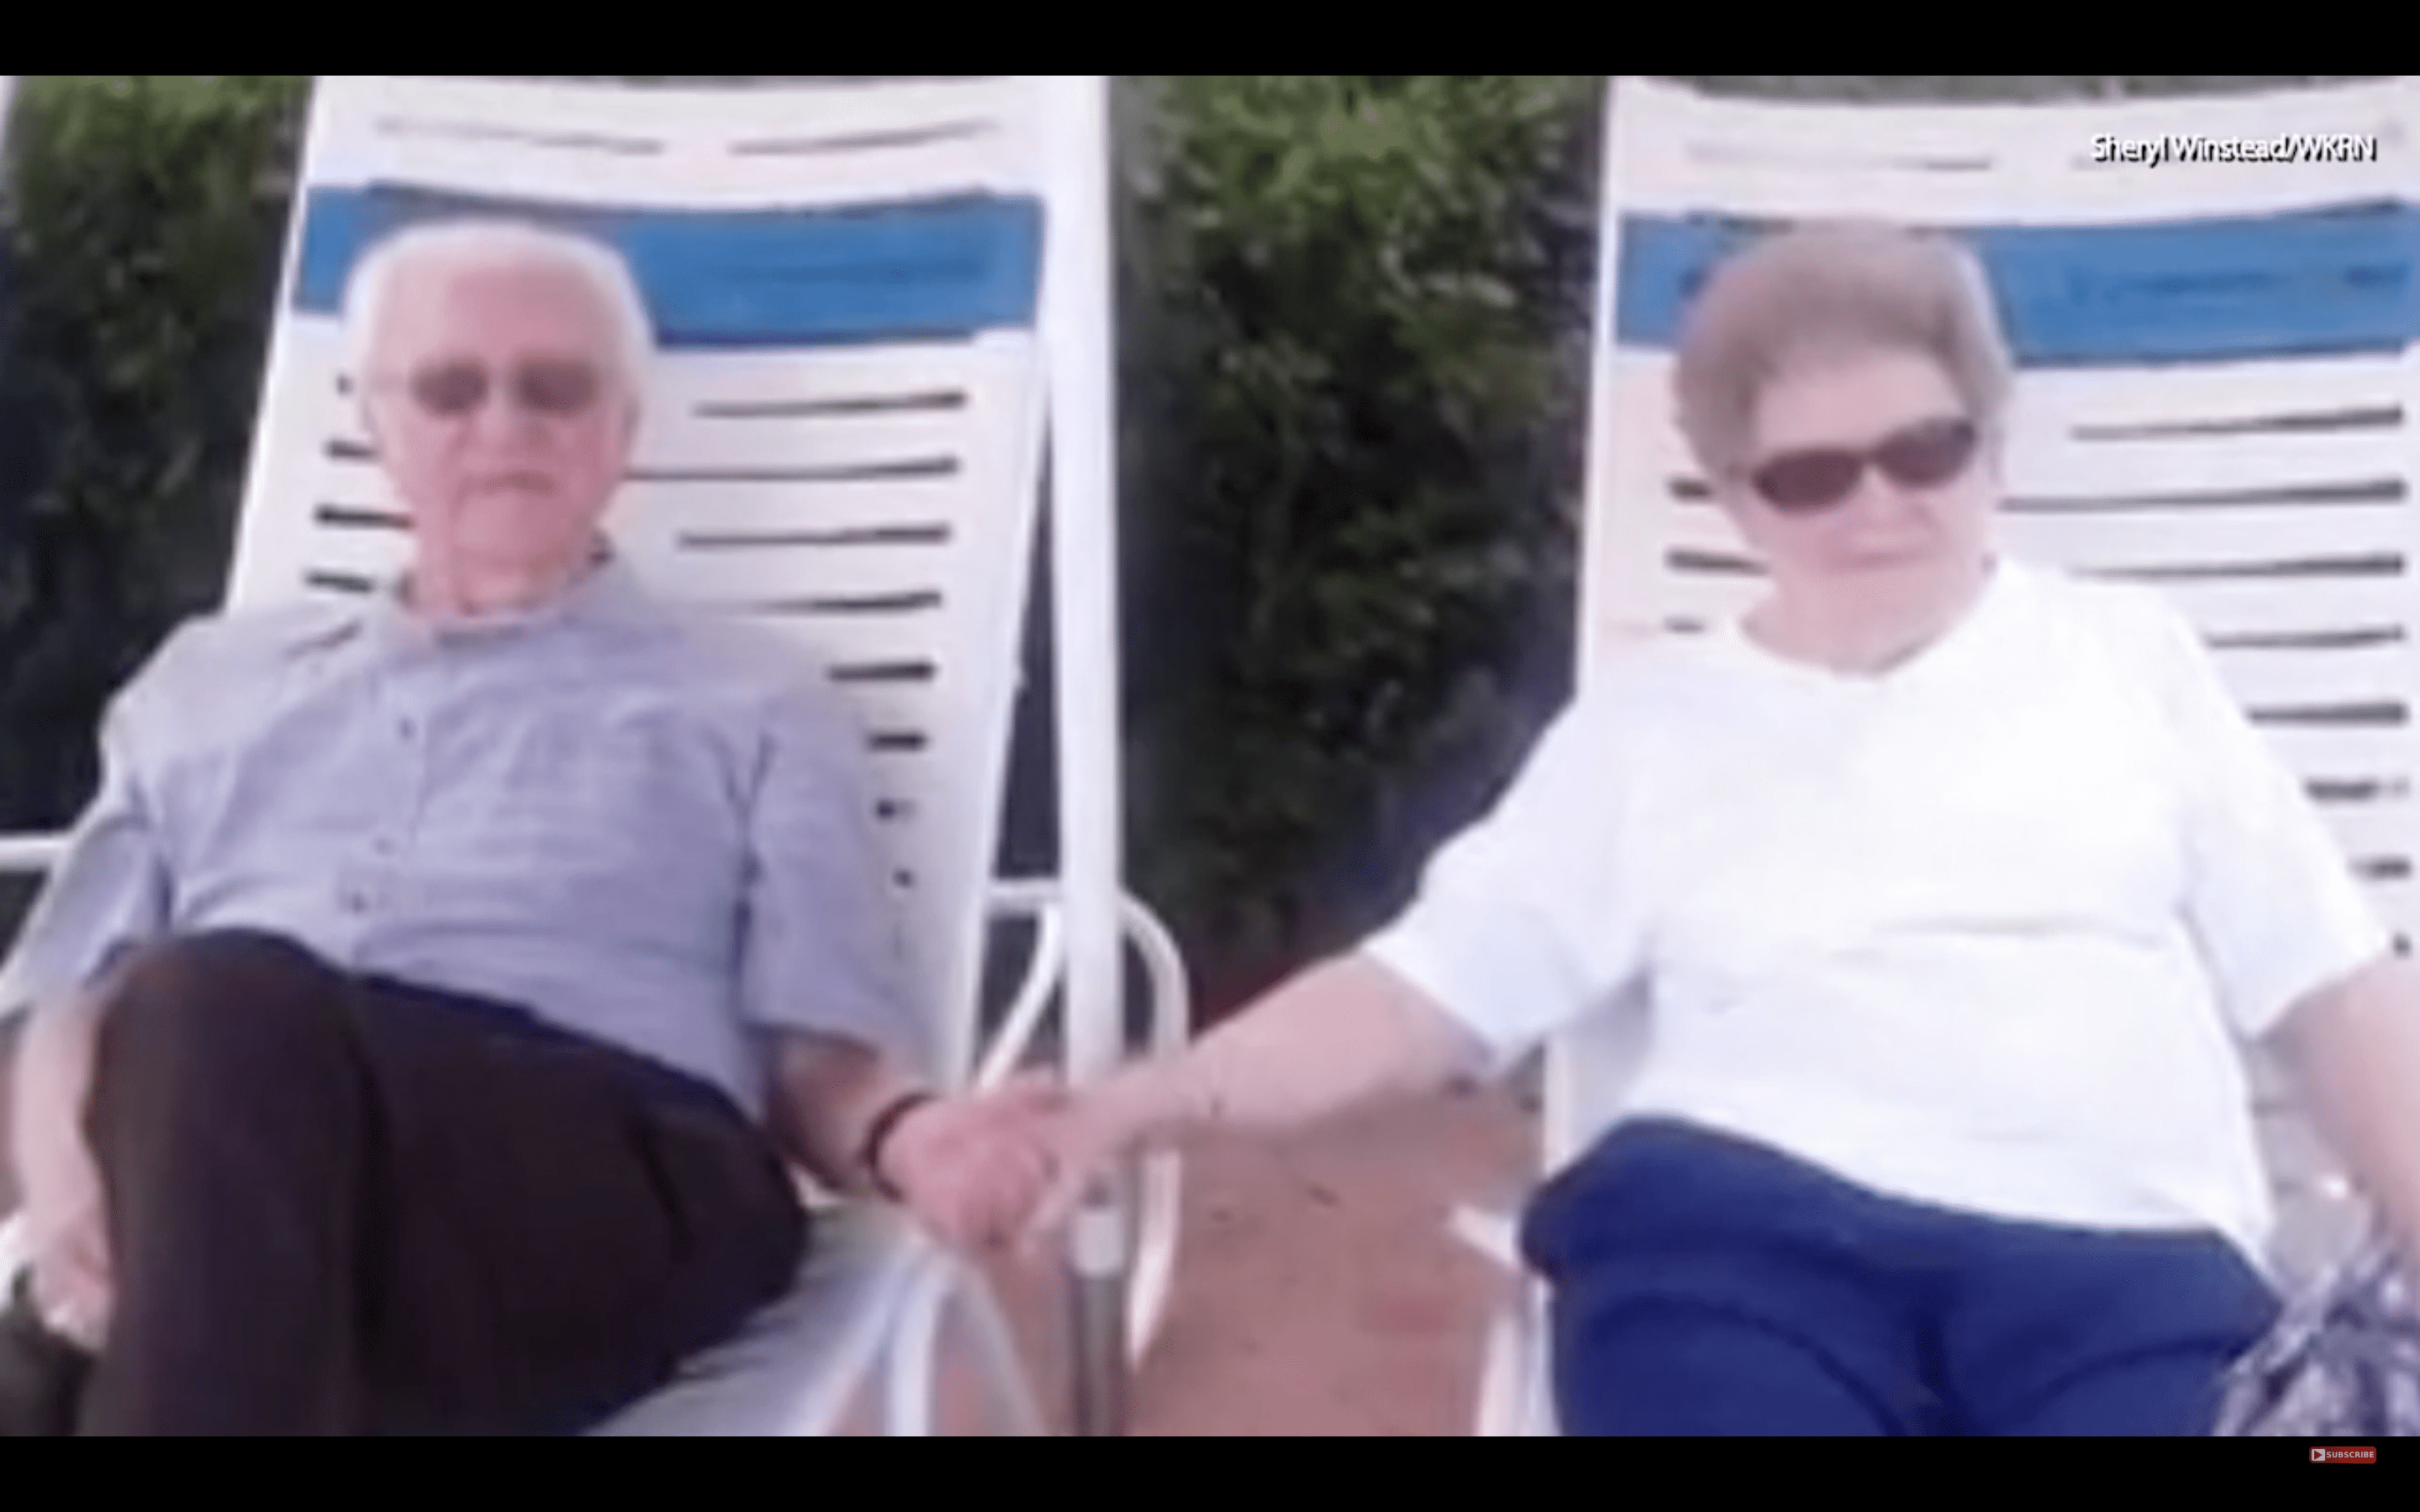 Trent und Dolores Winstead sitzen zusammen und halten sich an den Händen. | Quelle: YouTube.com/WSB-TV